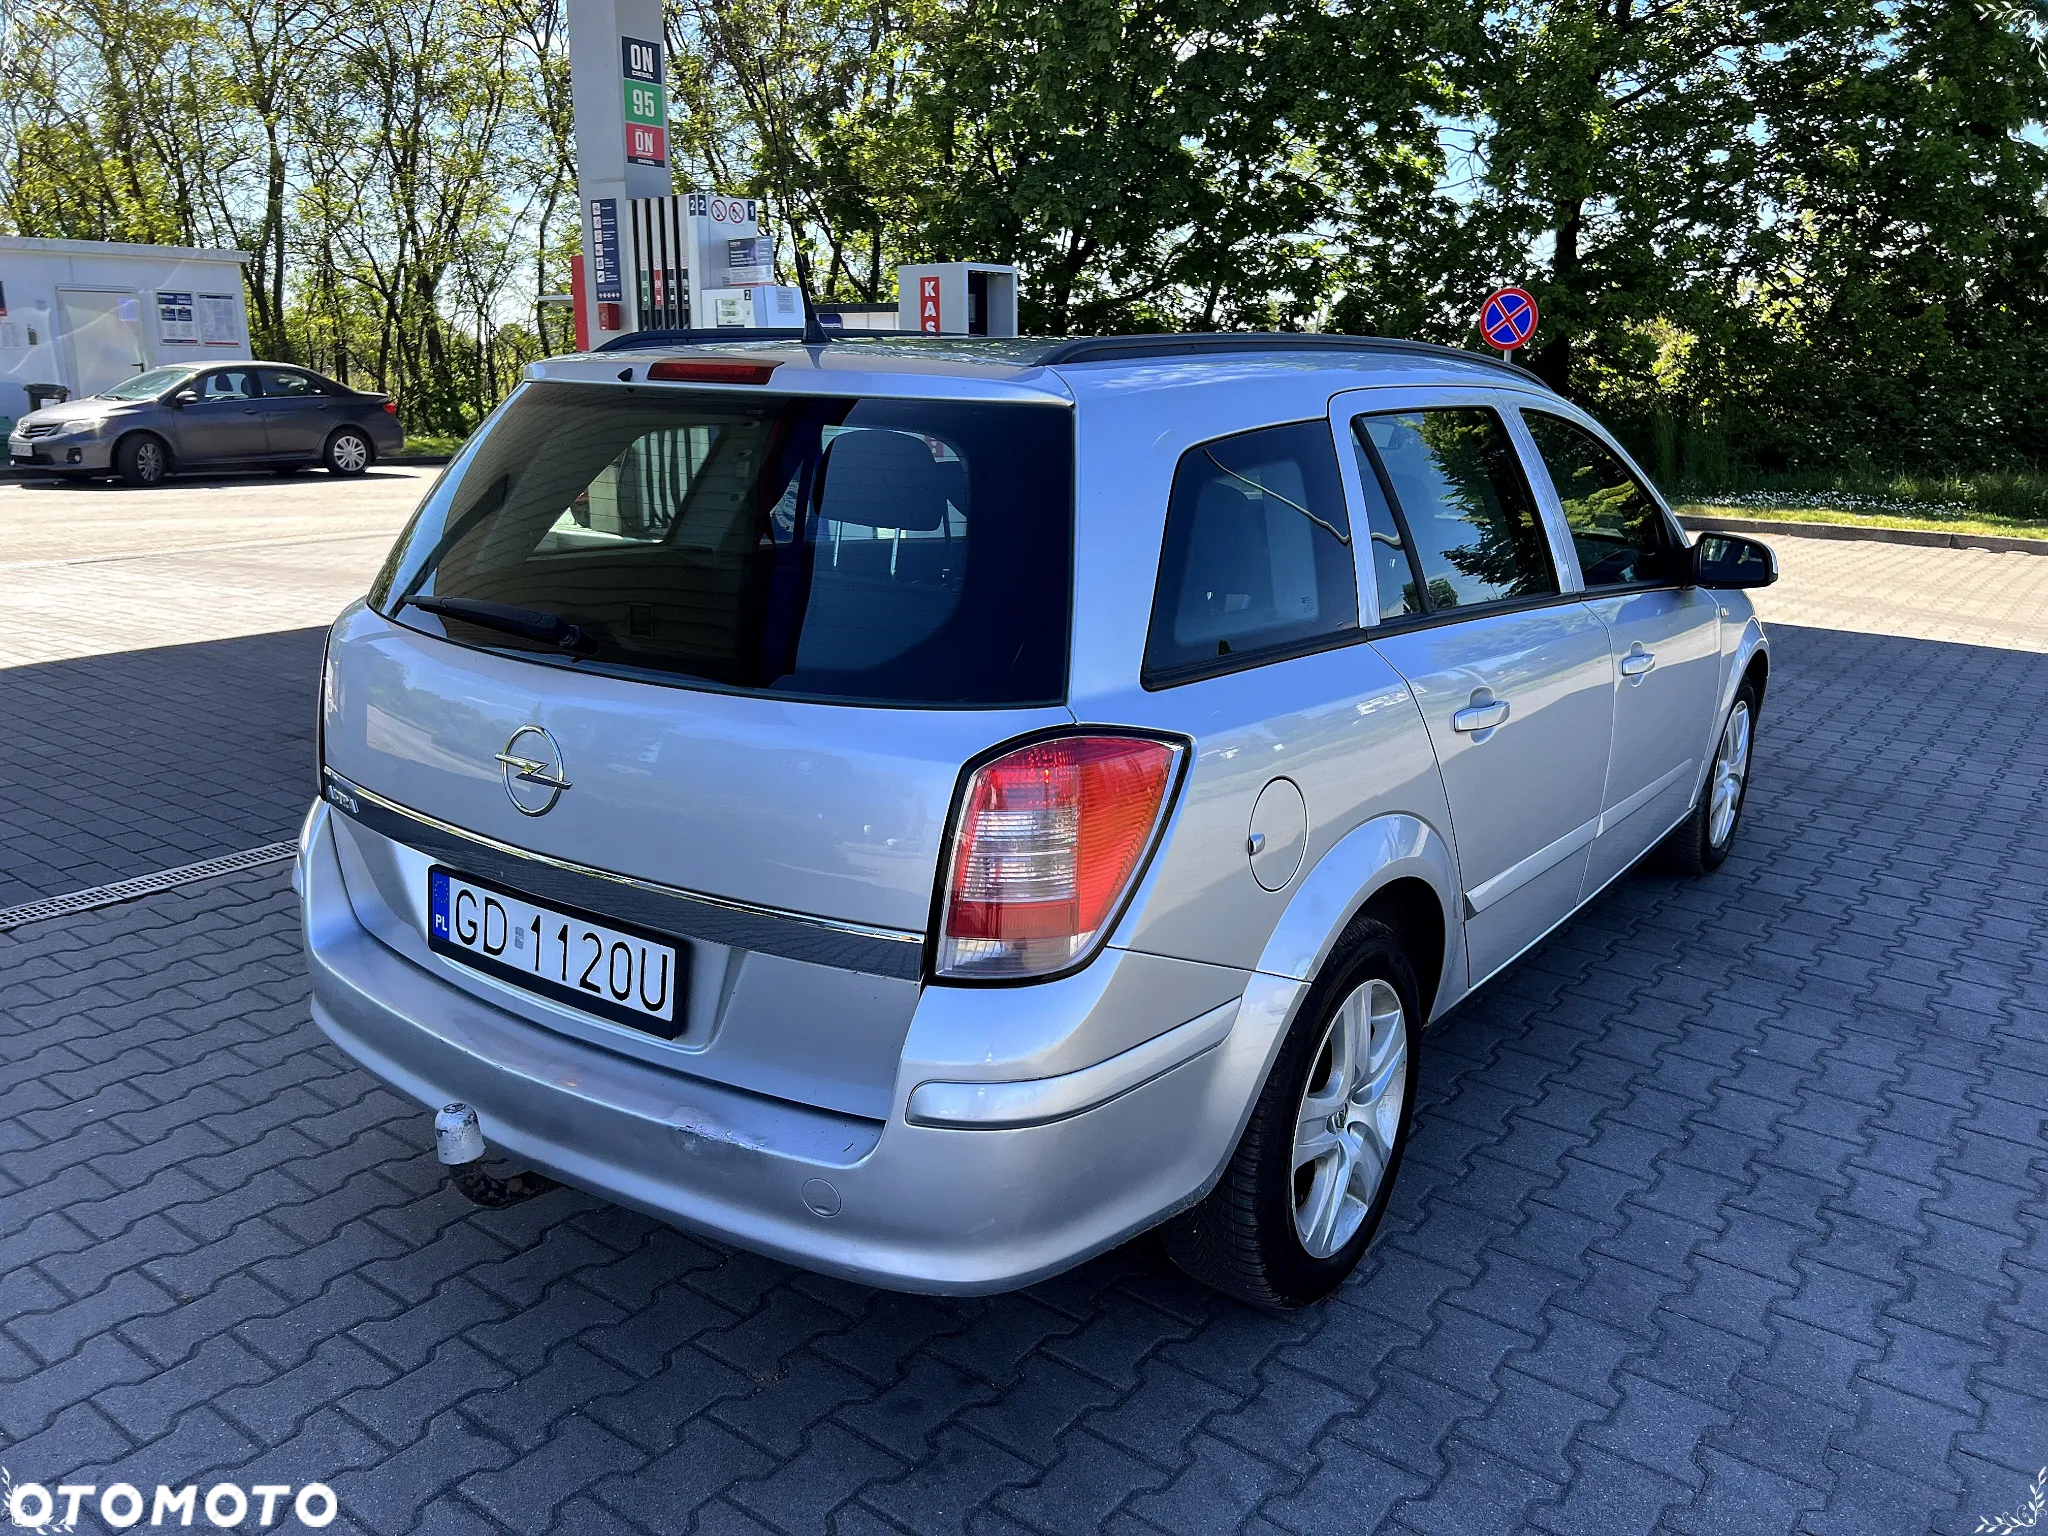 Opel Astra III 1.6 Enjoy - 4